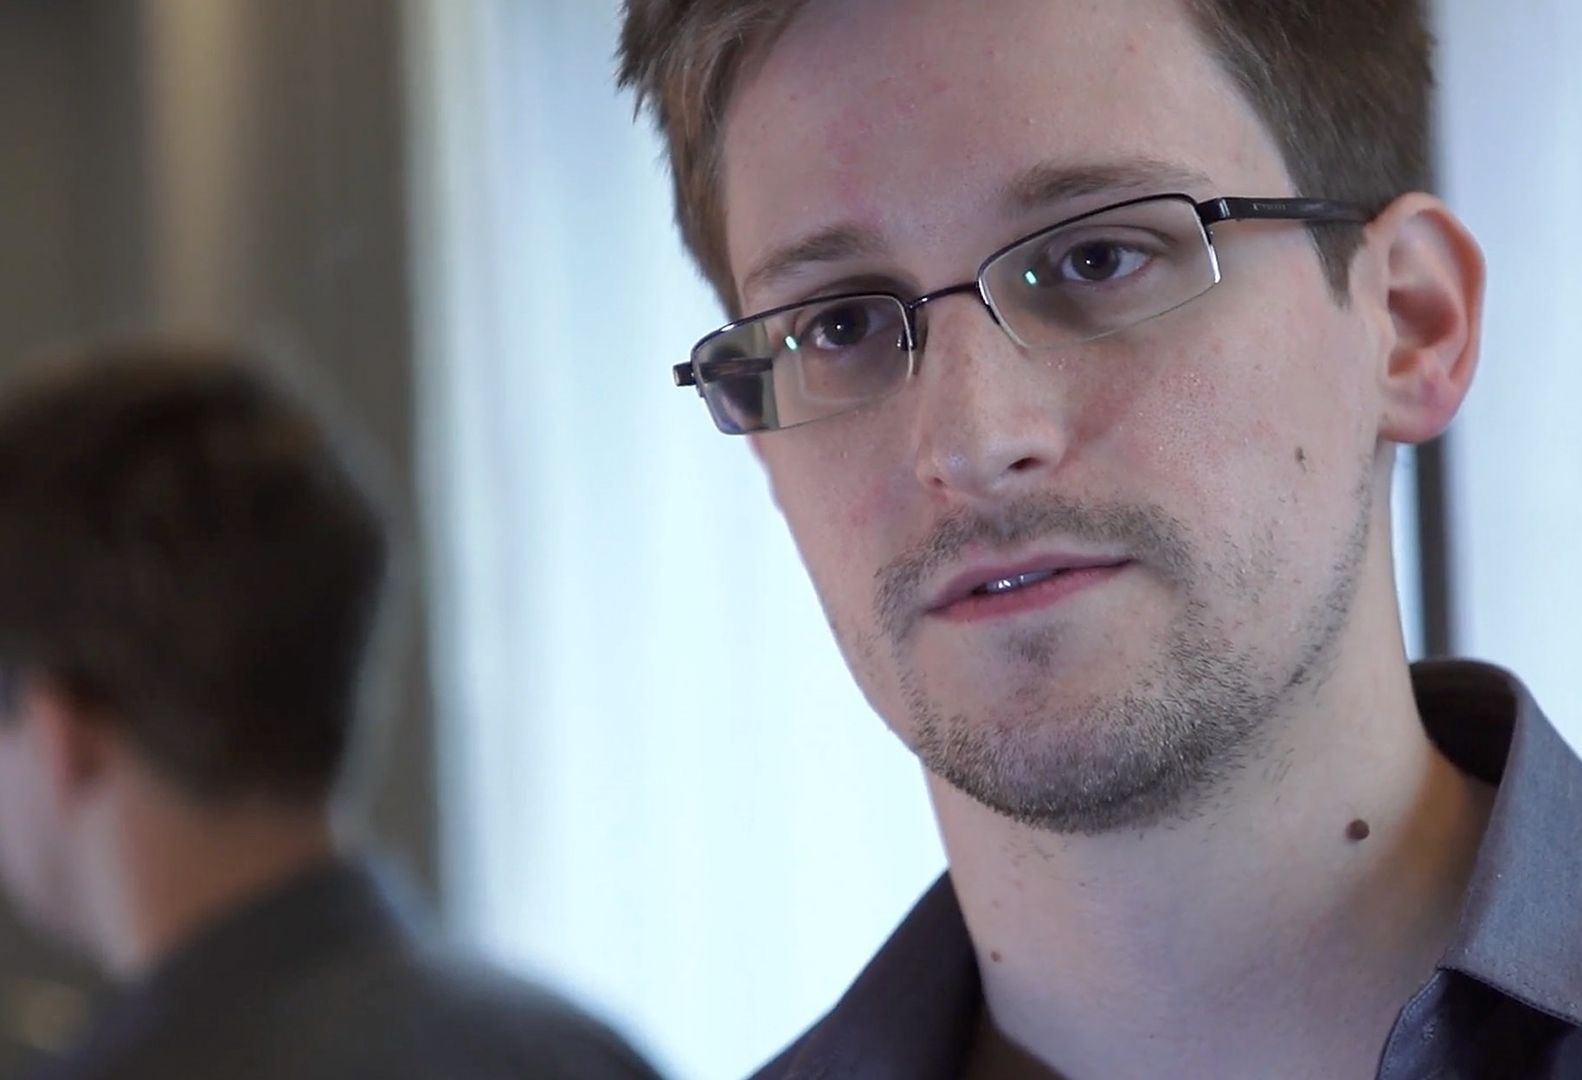 Co się dzieje z Edwardem Snowdenem? Po ataku Rosji zapadł się pod ziemię